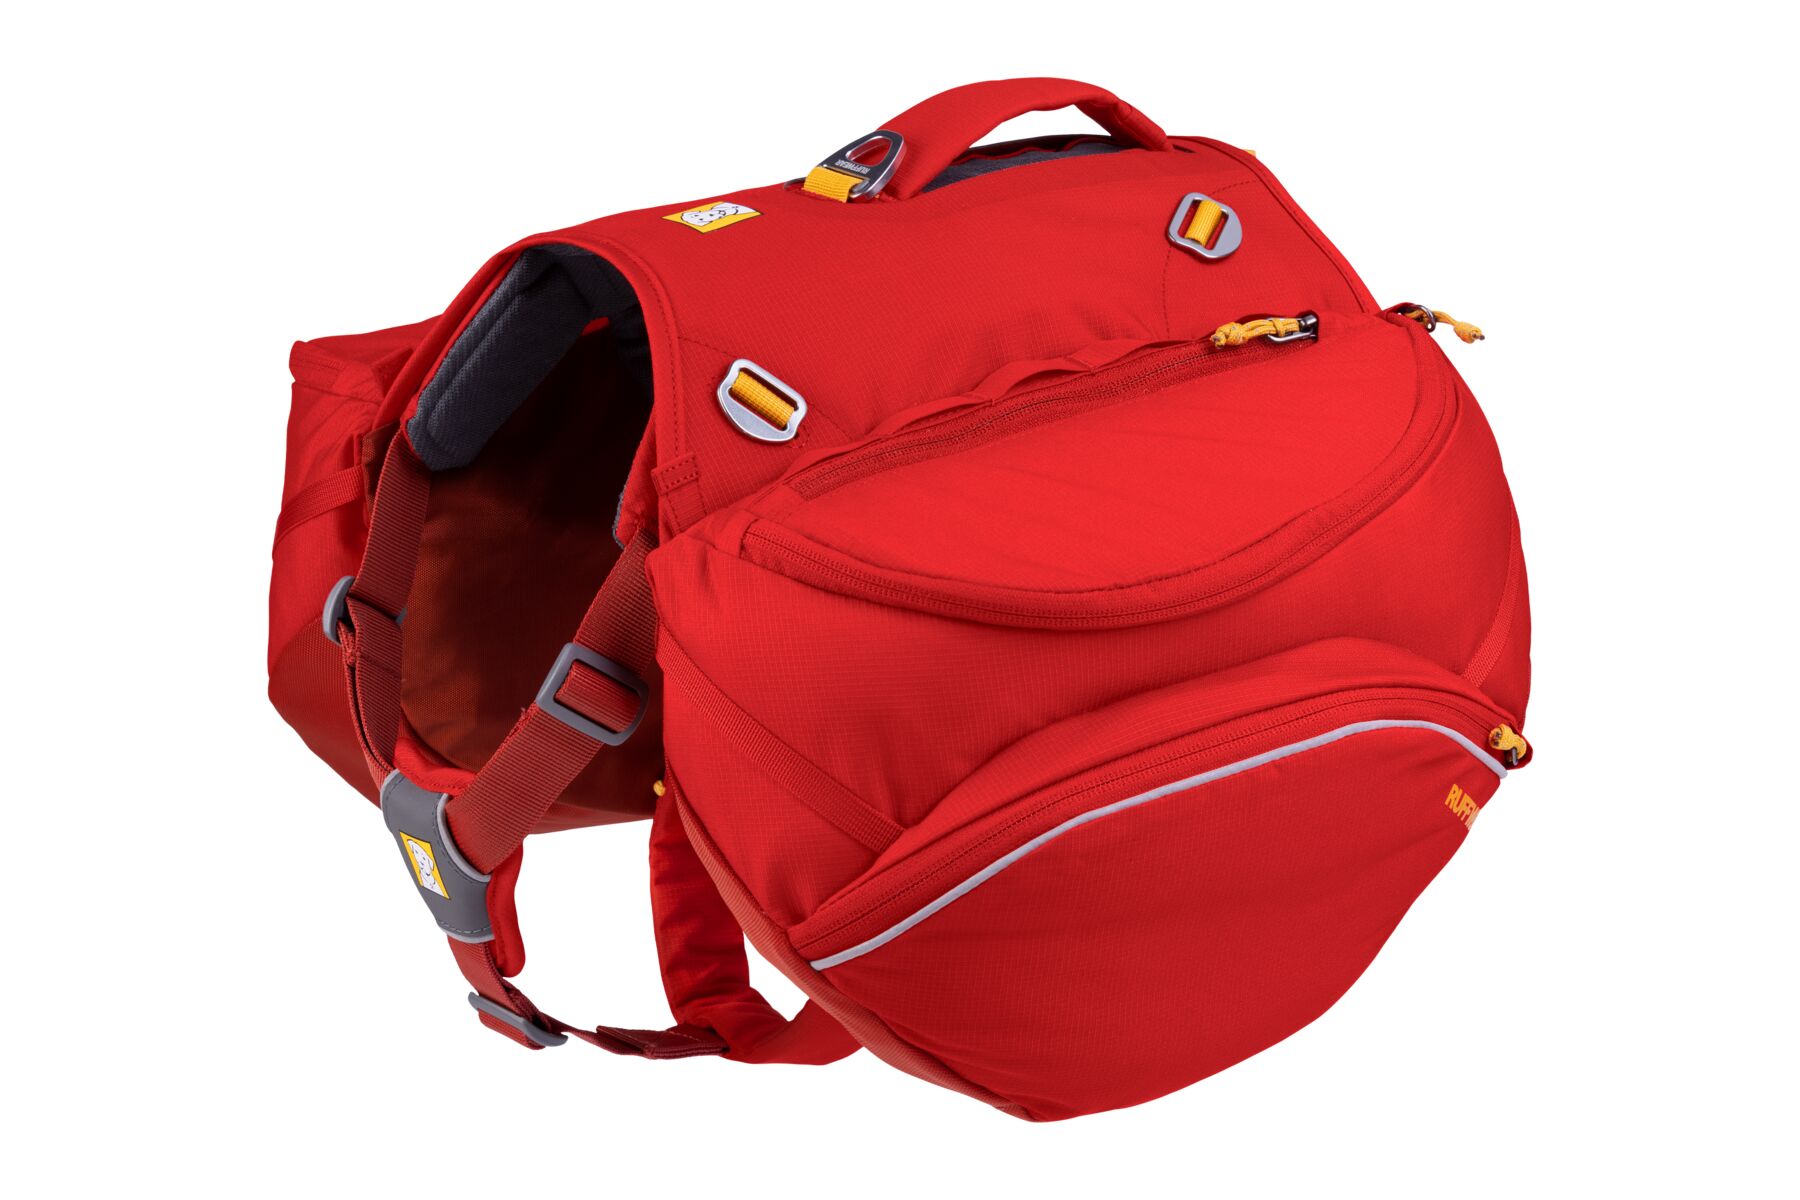 Ruffwear Palisades Pack™ - batoh a postroj pro psy 2 v 1 M, Red Currant (červená)